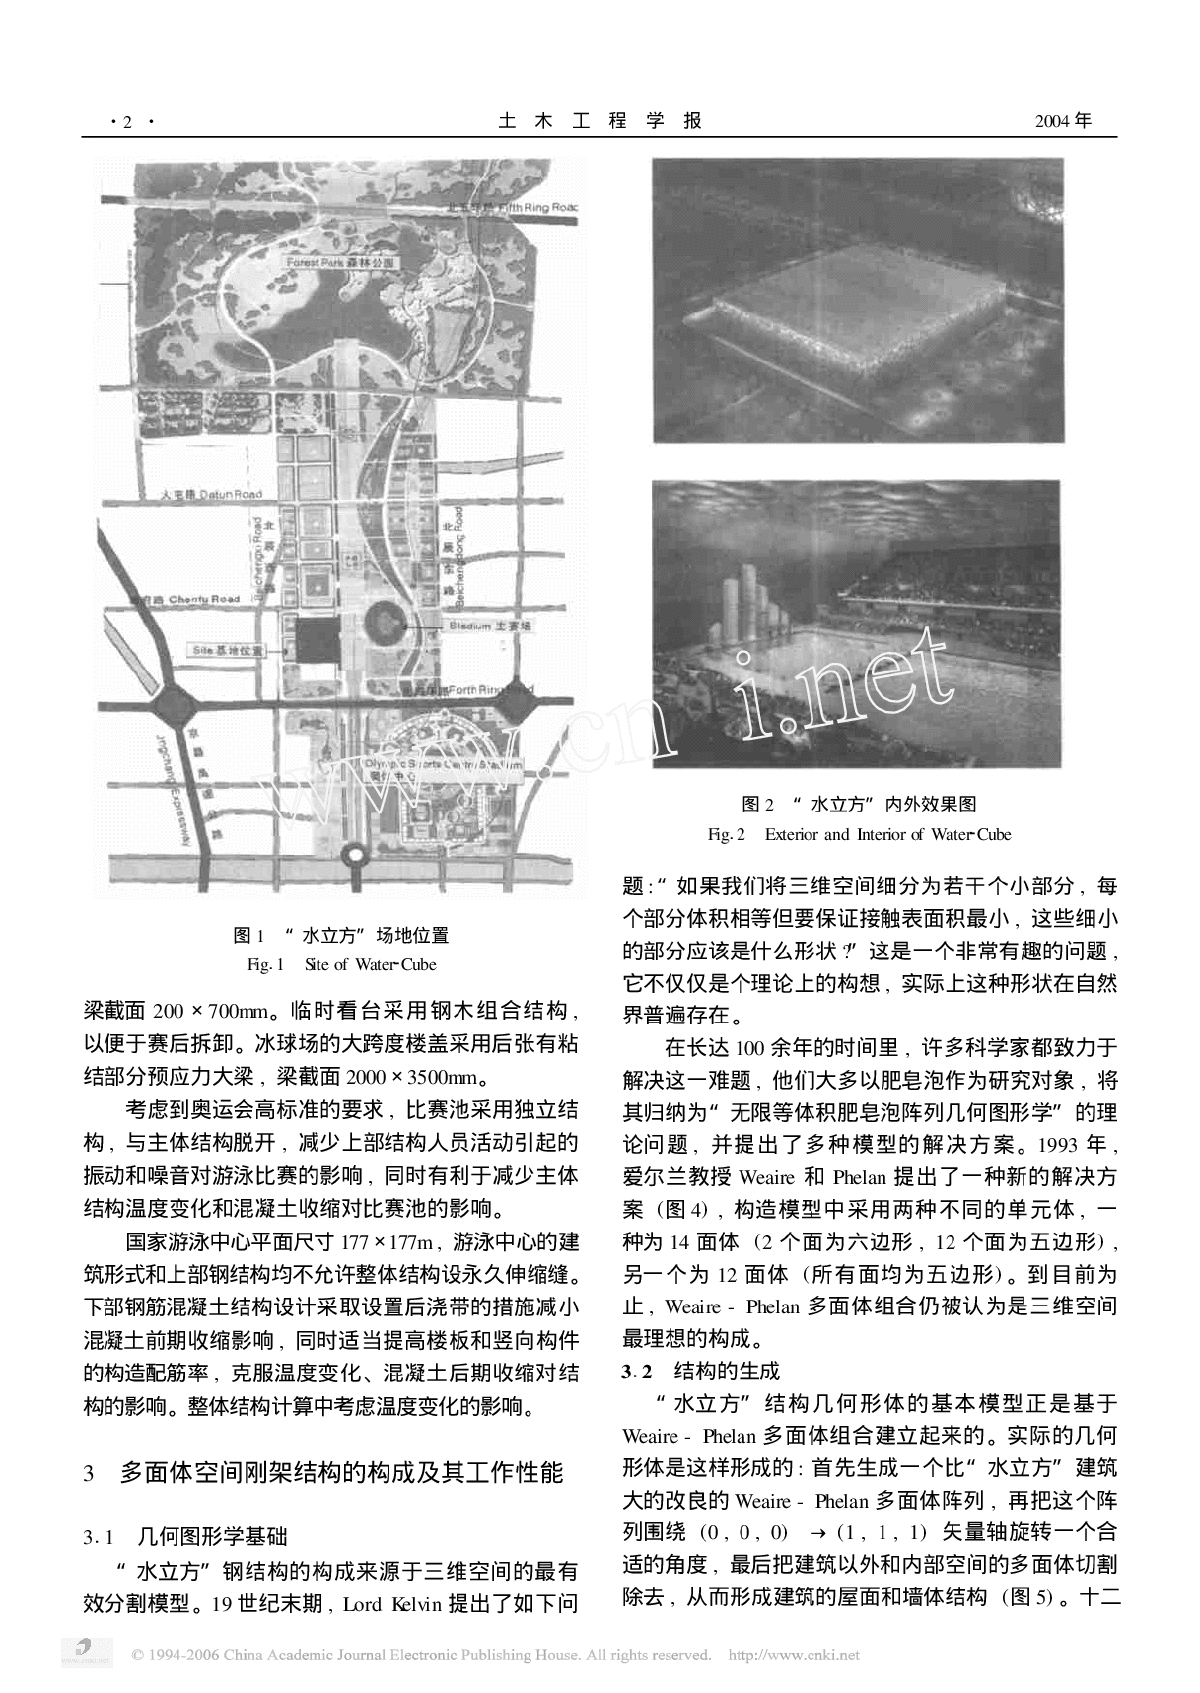 北京奥运国家游泳中心结构初步设计简介-图二